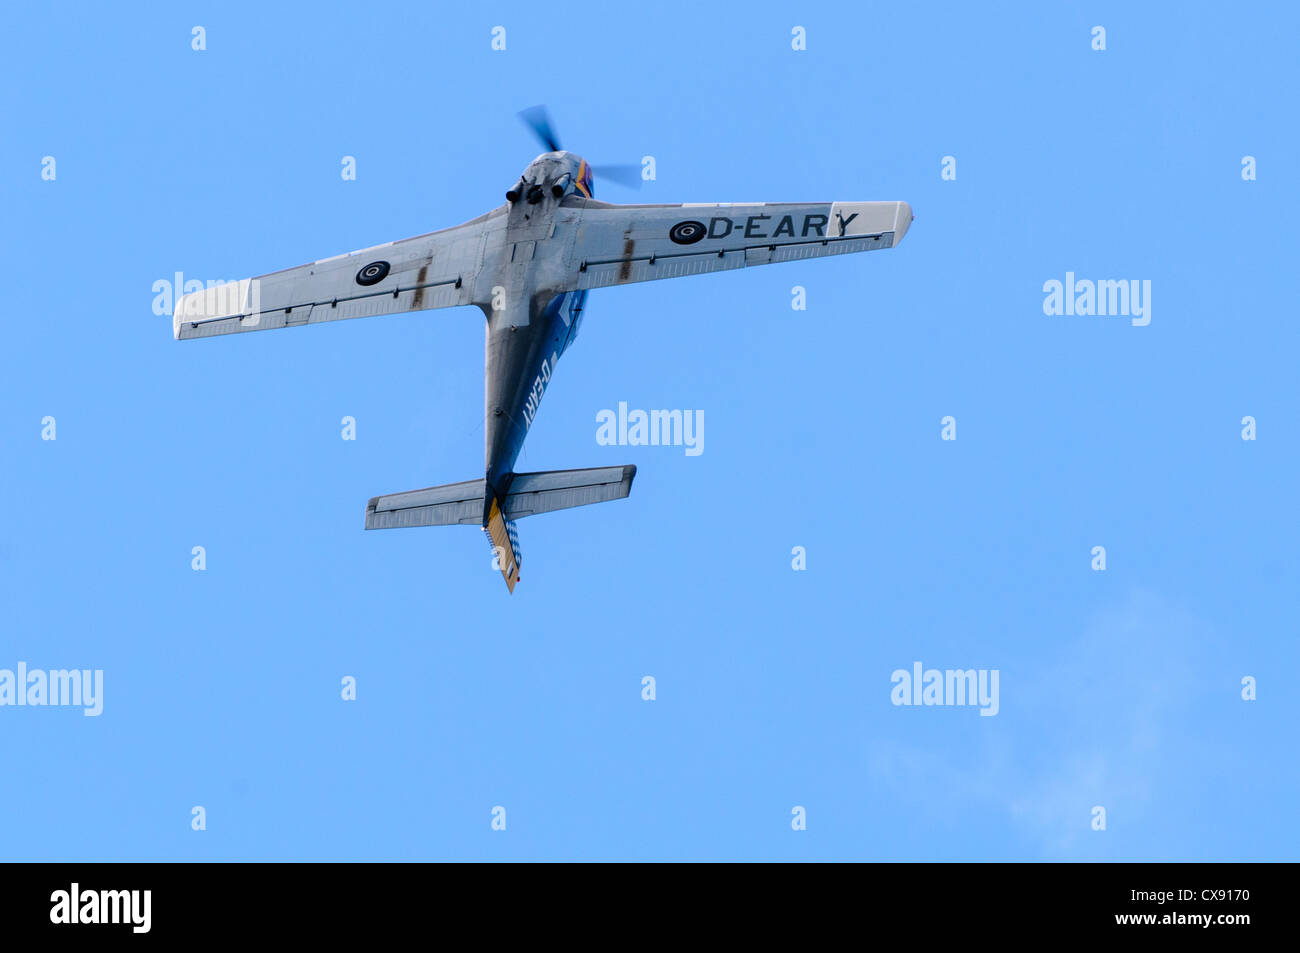 L'italien Piaggio Aero P-149D (D-avion) EARY tirant une loop-the-loop Banque D'Images